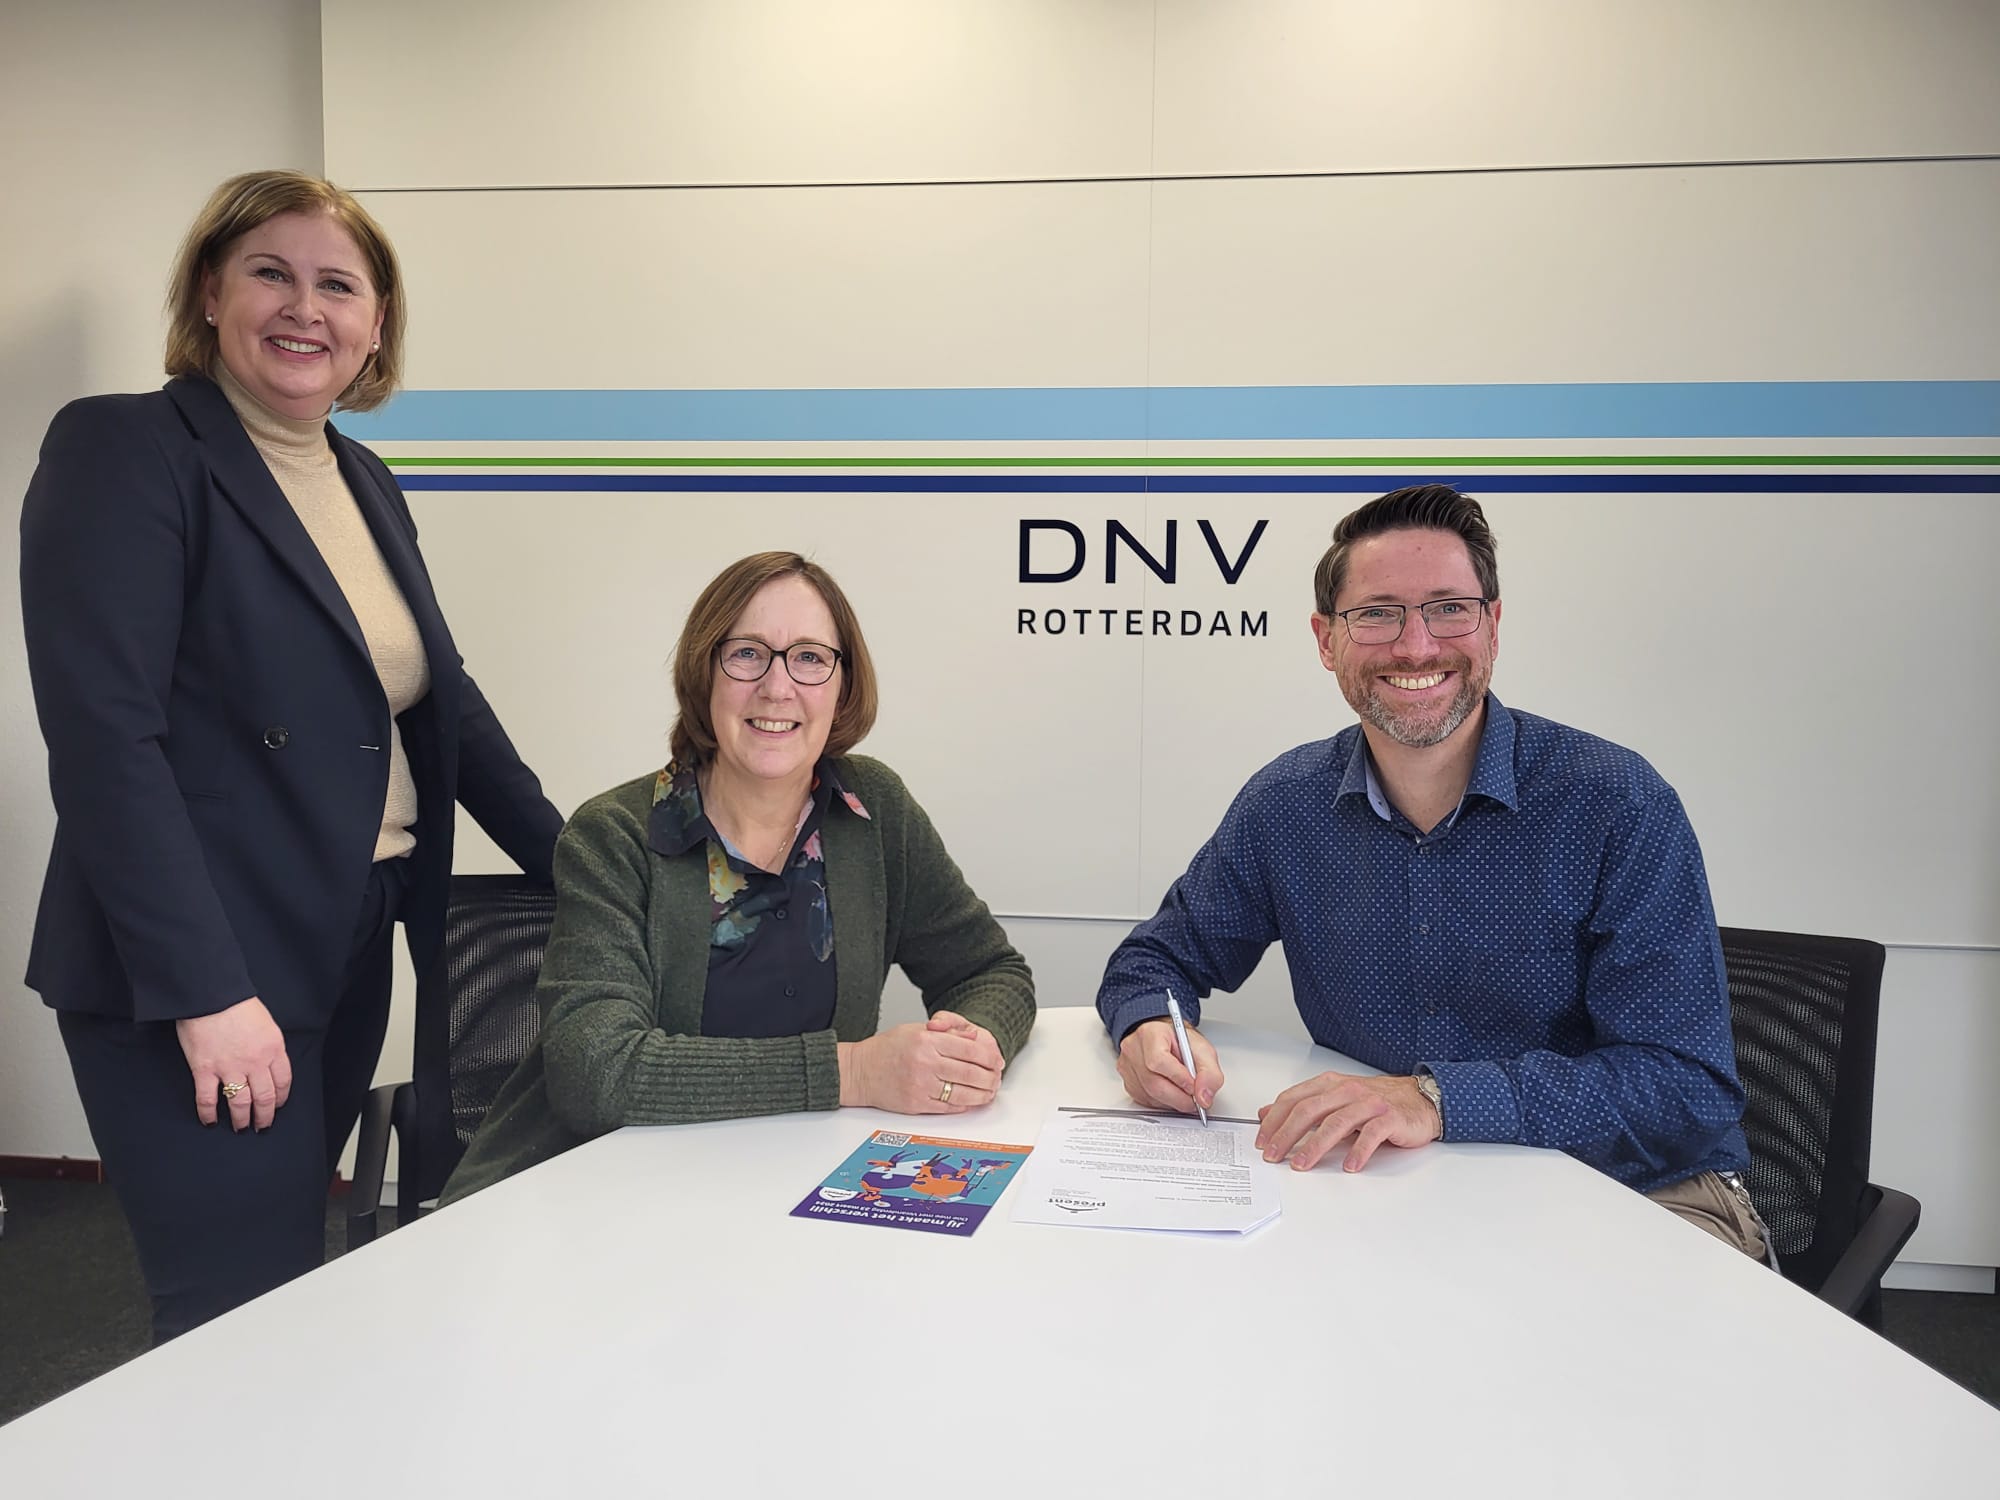 Eltjo Veentjer, area manager Benelux van DNV Business Assurance tekende begin februari de partneroverkomst met Petra Teunissen en Desirée de Bruin, voorzitter en coördinator van Stichting Present. Present kijkt ernaar uit om duurzaam samen te werken met het mooie team van DNV Business Assurance.